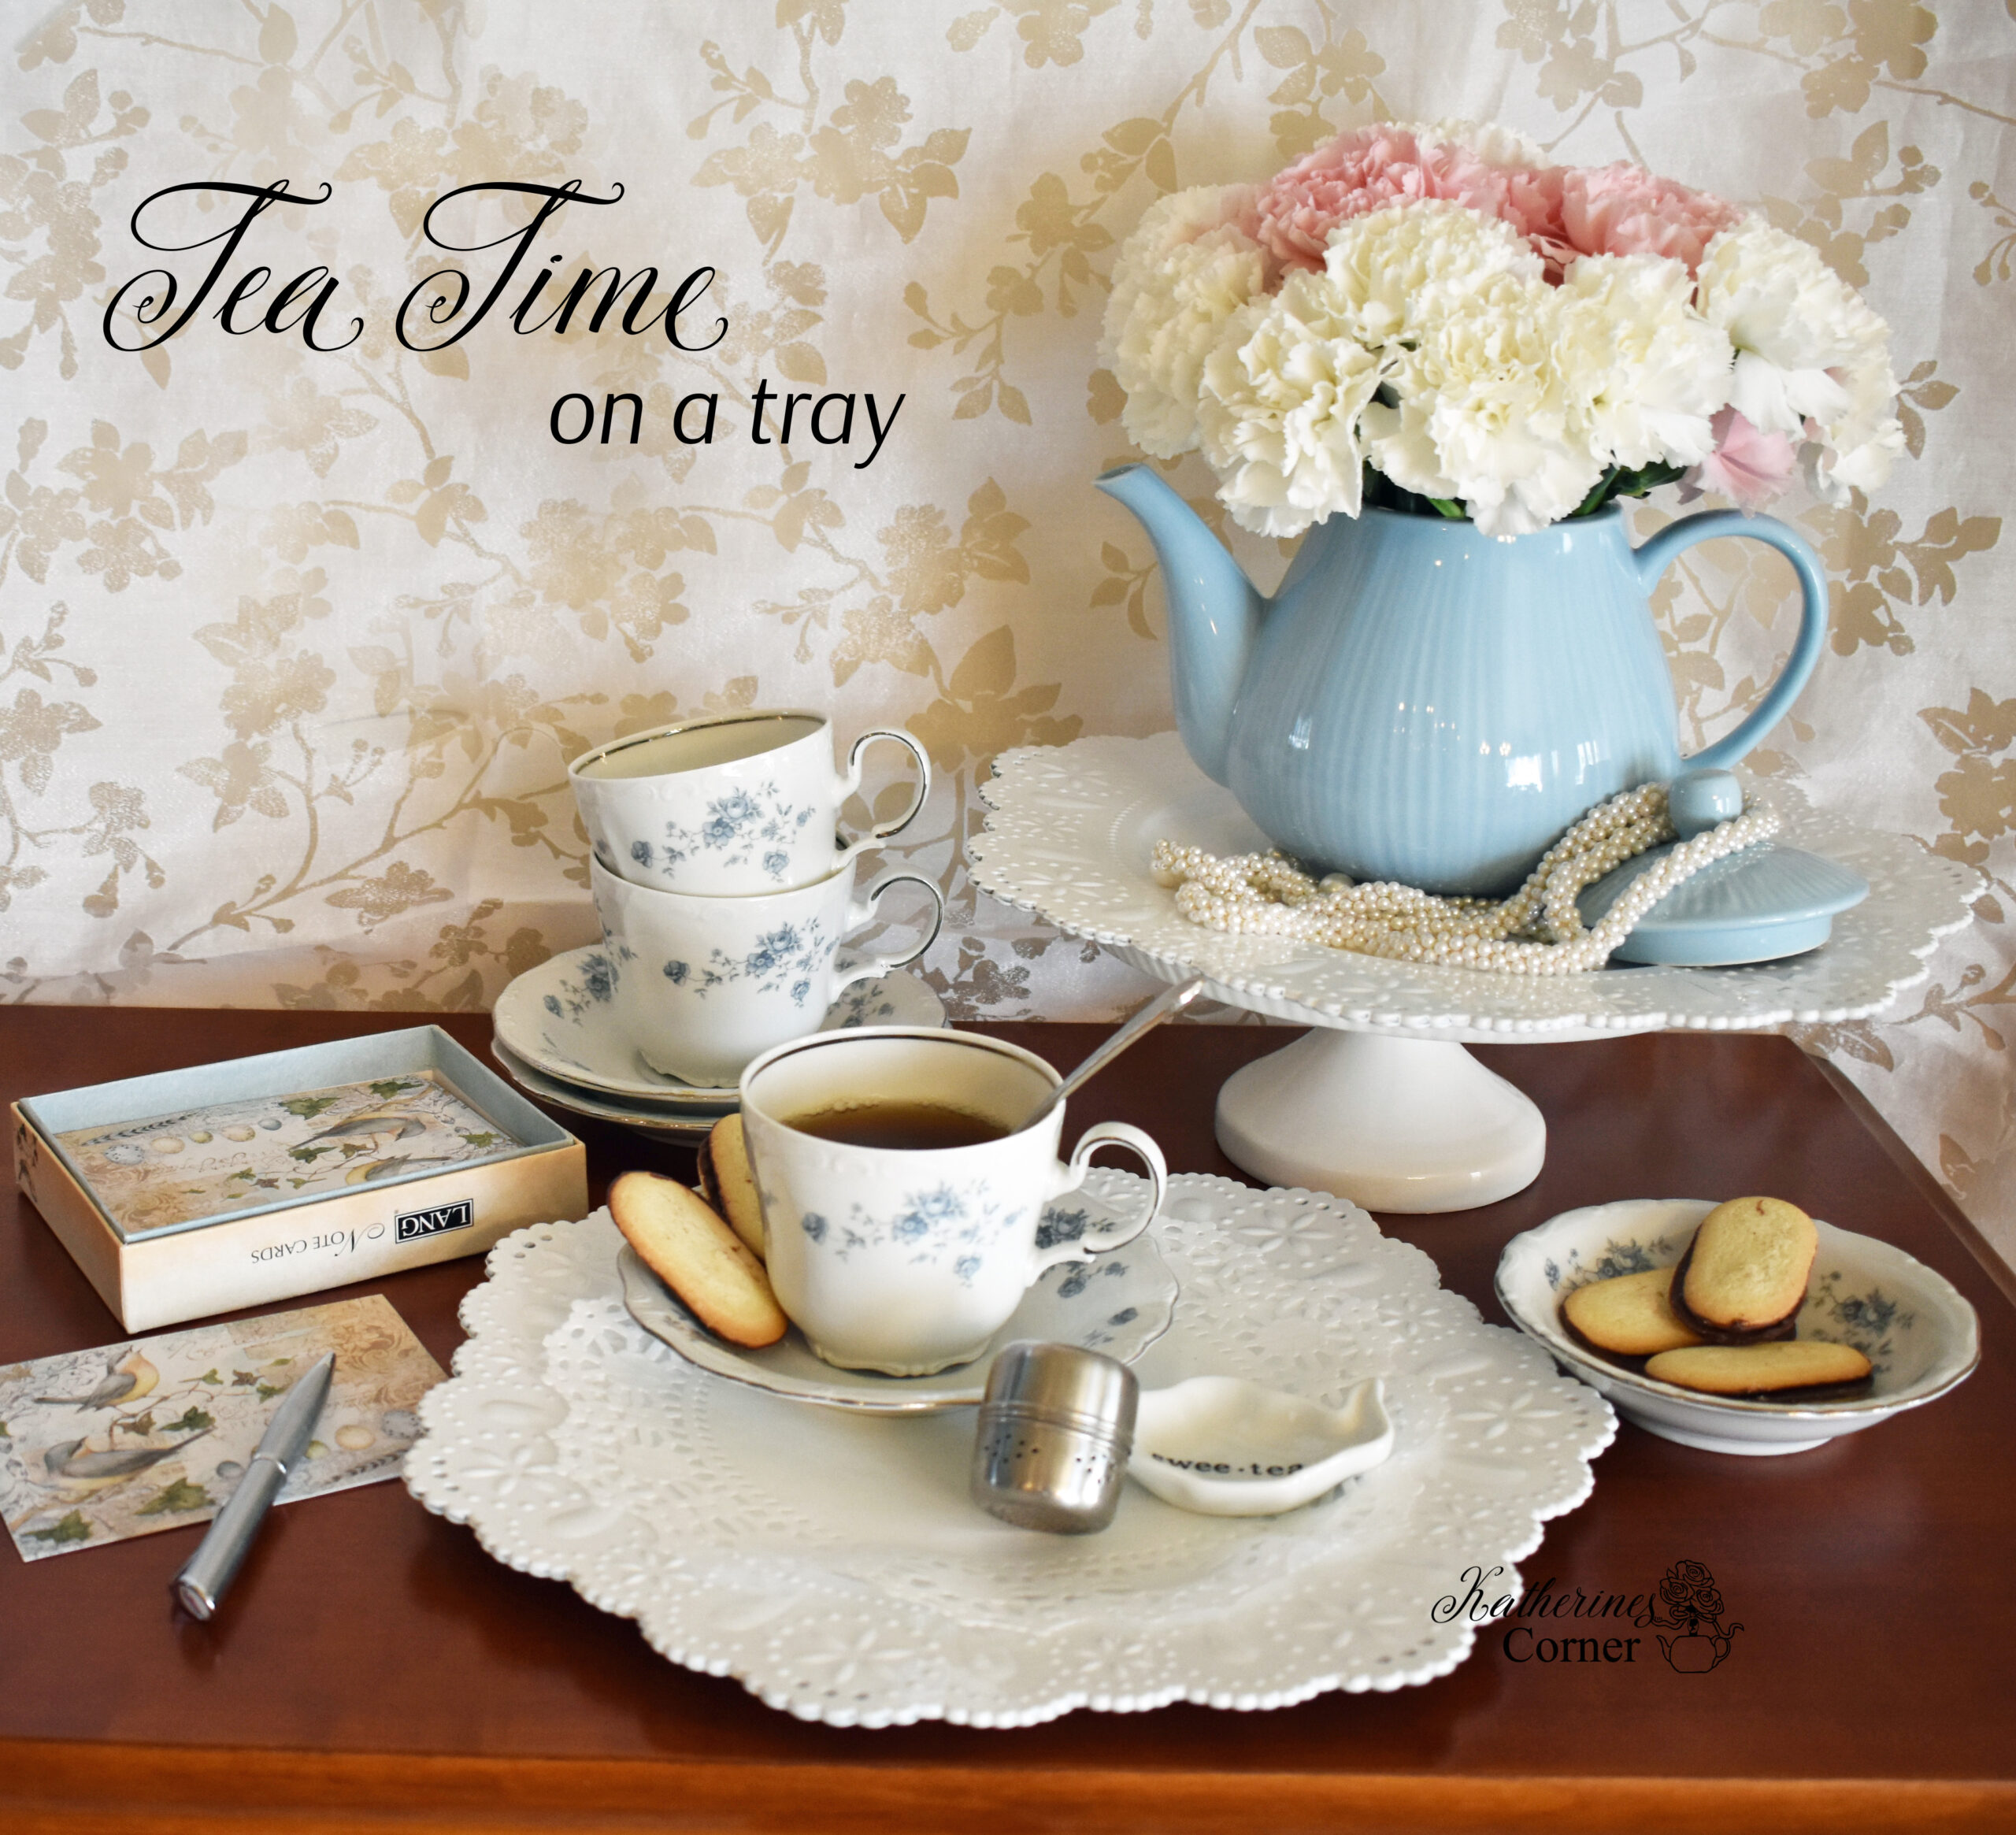 Tea Time on a Tray Blog Tour